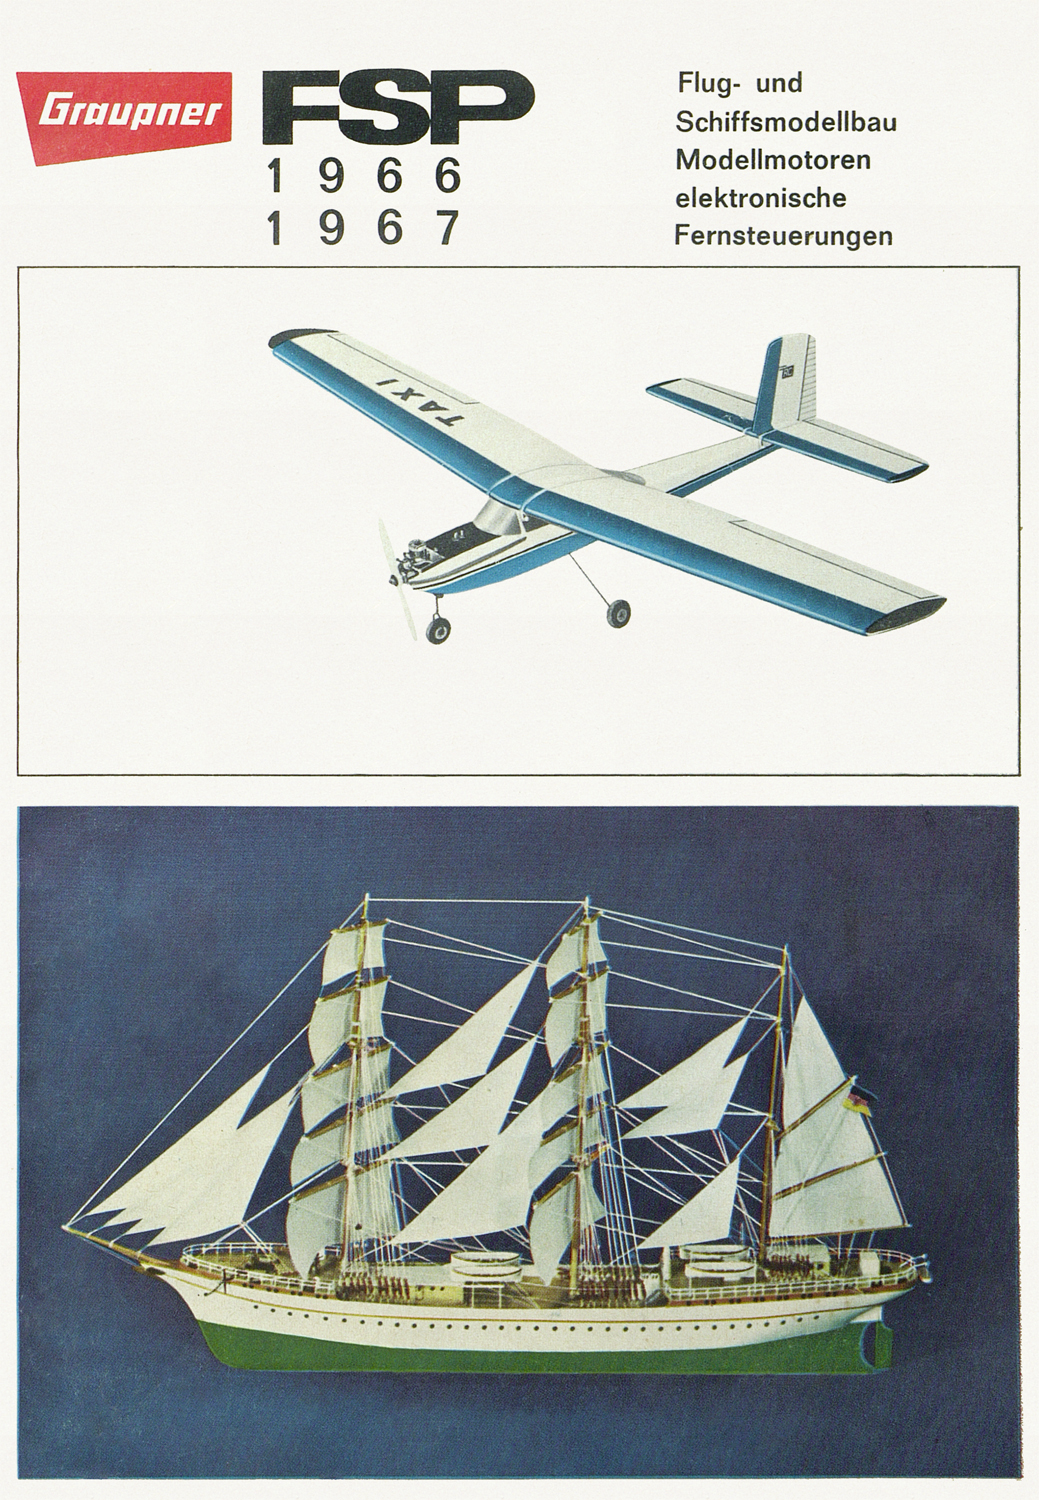 Graupner Flug- und Schiffsmodellbau Prospekt 1966-1967